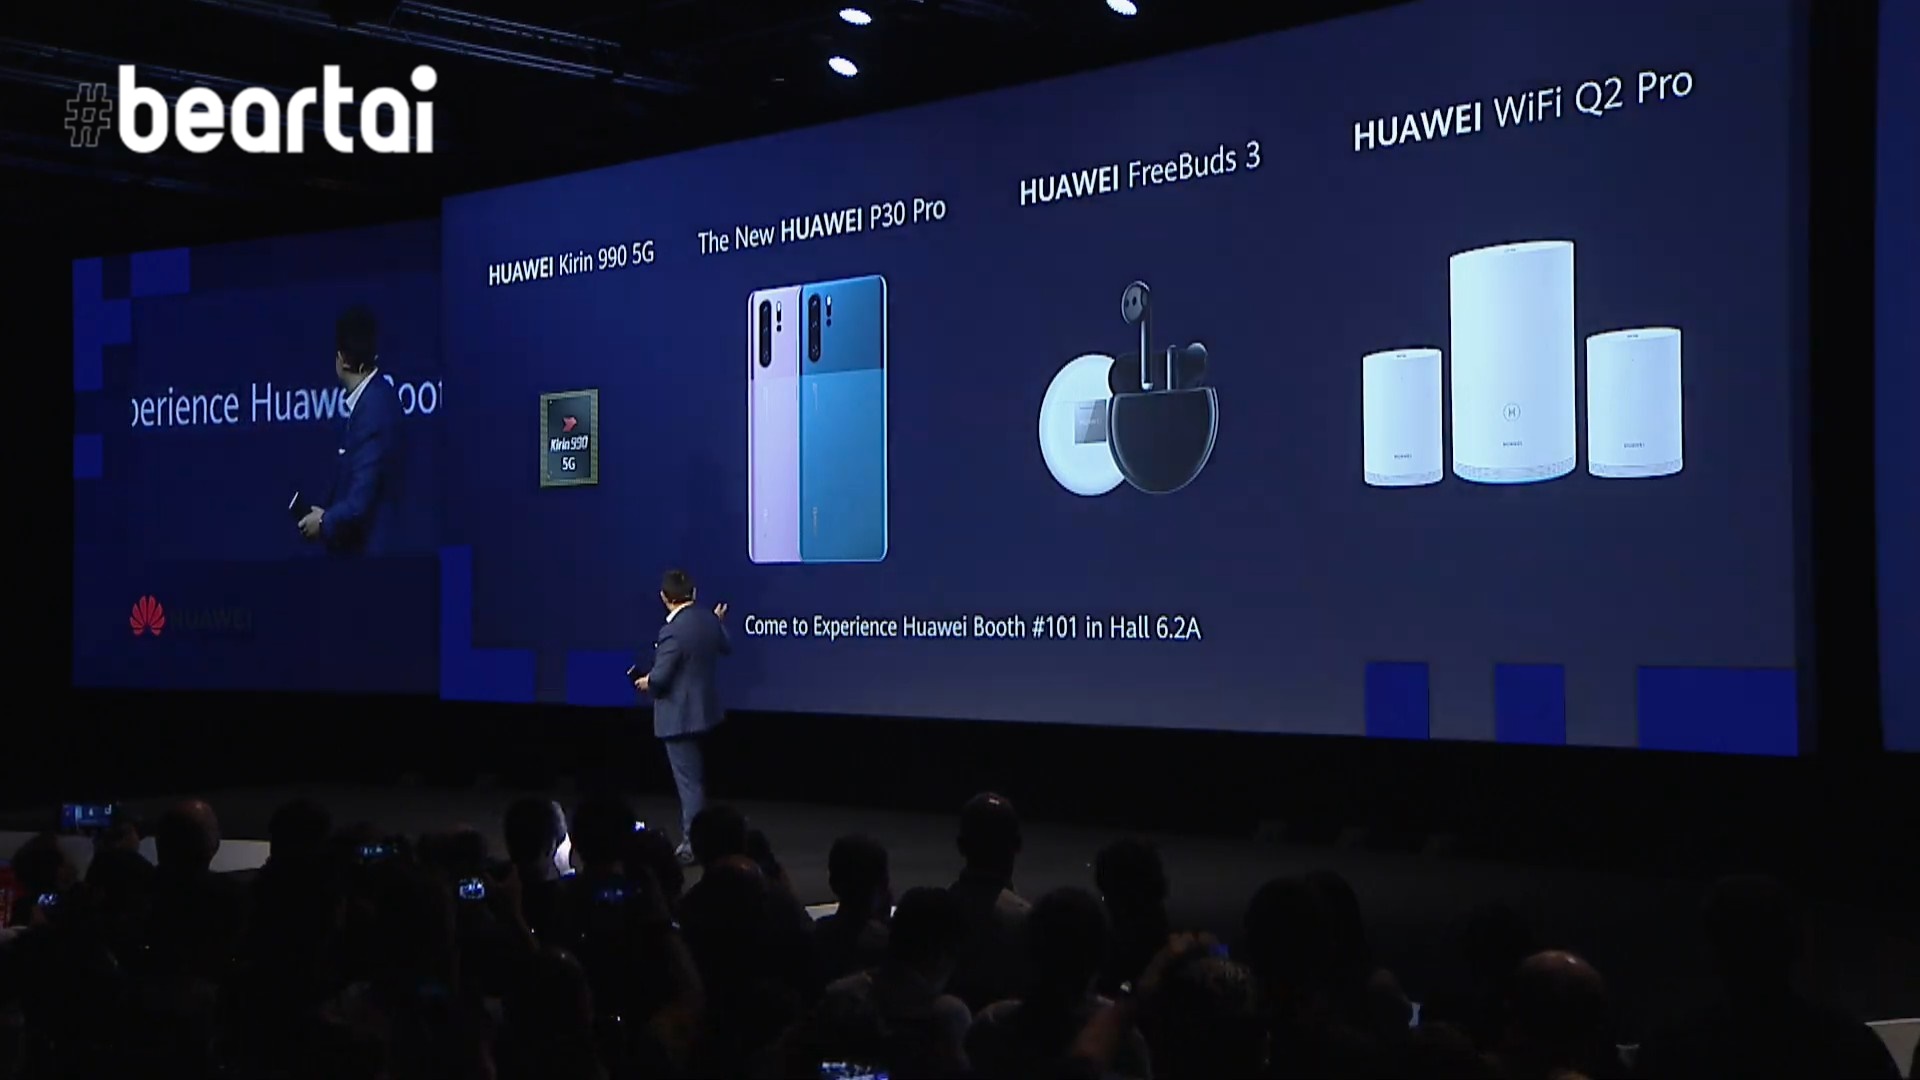 สรุป Huawei in IFA 2019: เปิดตัว P30 สีใหม่, FreeBuds ที่ตัดเสียงรอบข้างได้ และเราเตอร์ที่สัญญาณครอบคลุมทั้งบ้าน